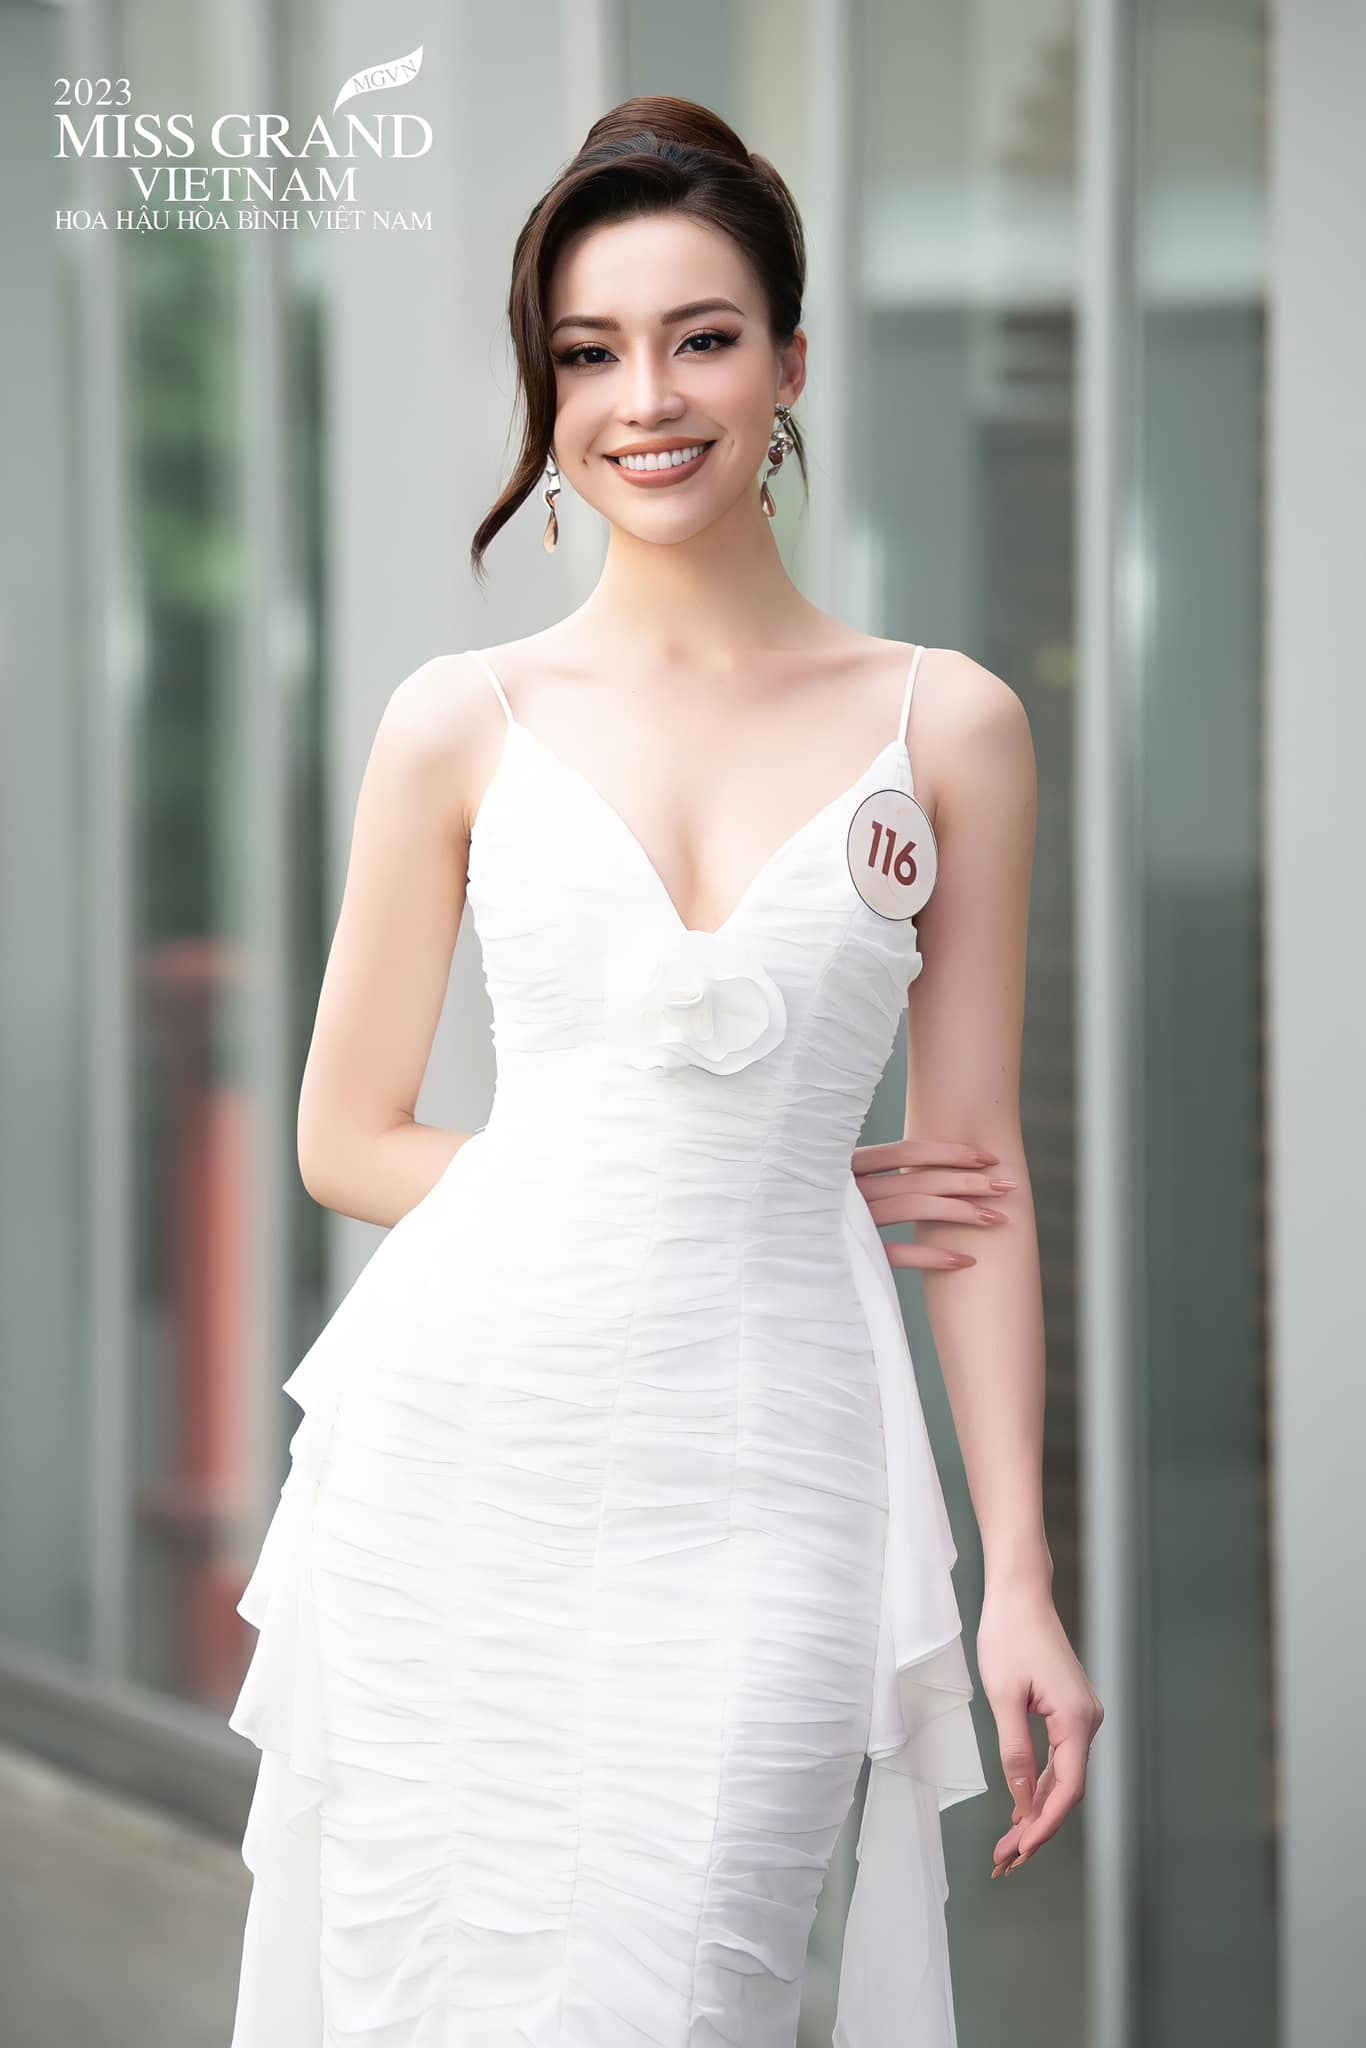 Top 5 ứng cử viên sáng giá tại chung khảo Miss Grand Vietnam 2023, Đặng Hoàng Tâm Như nổi bật nhất? - Ảnh 5.